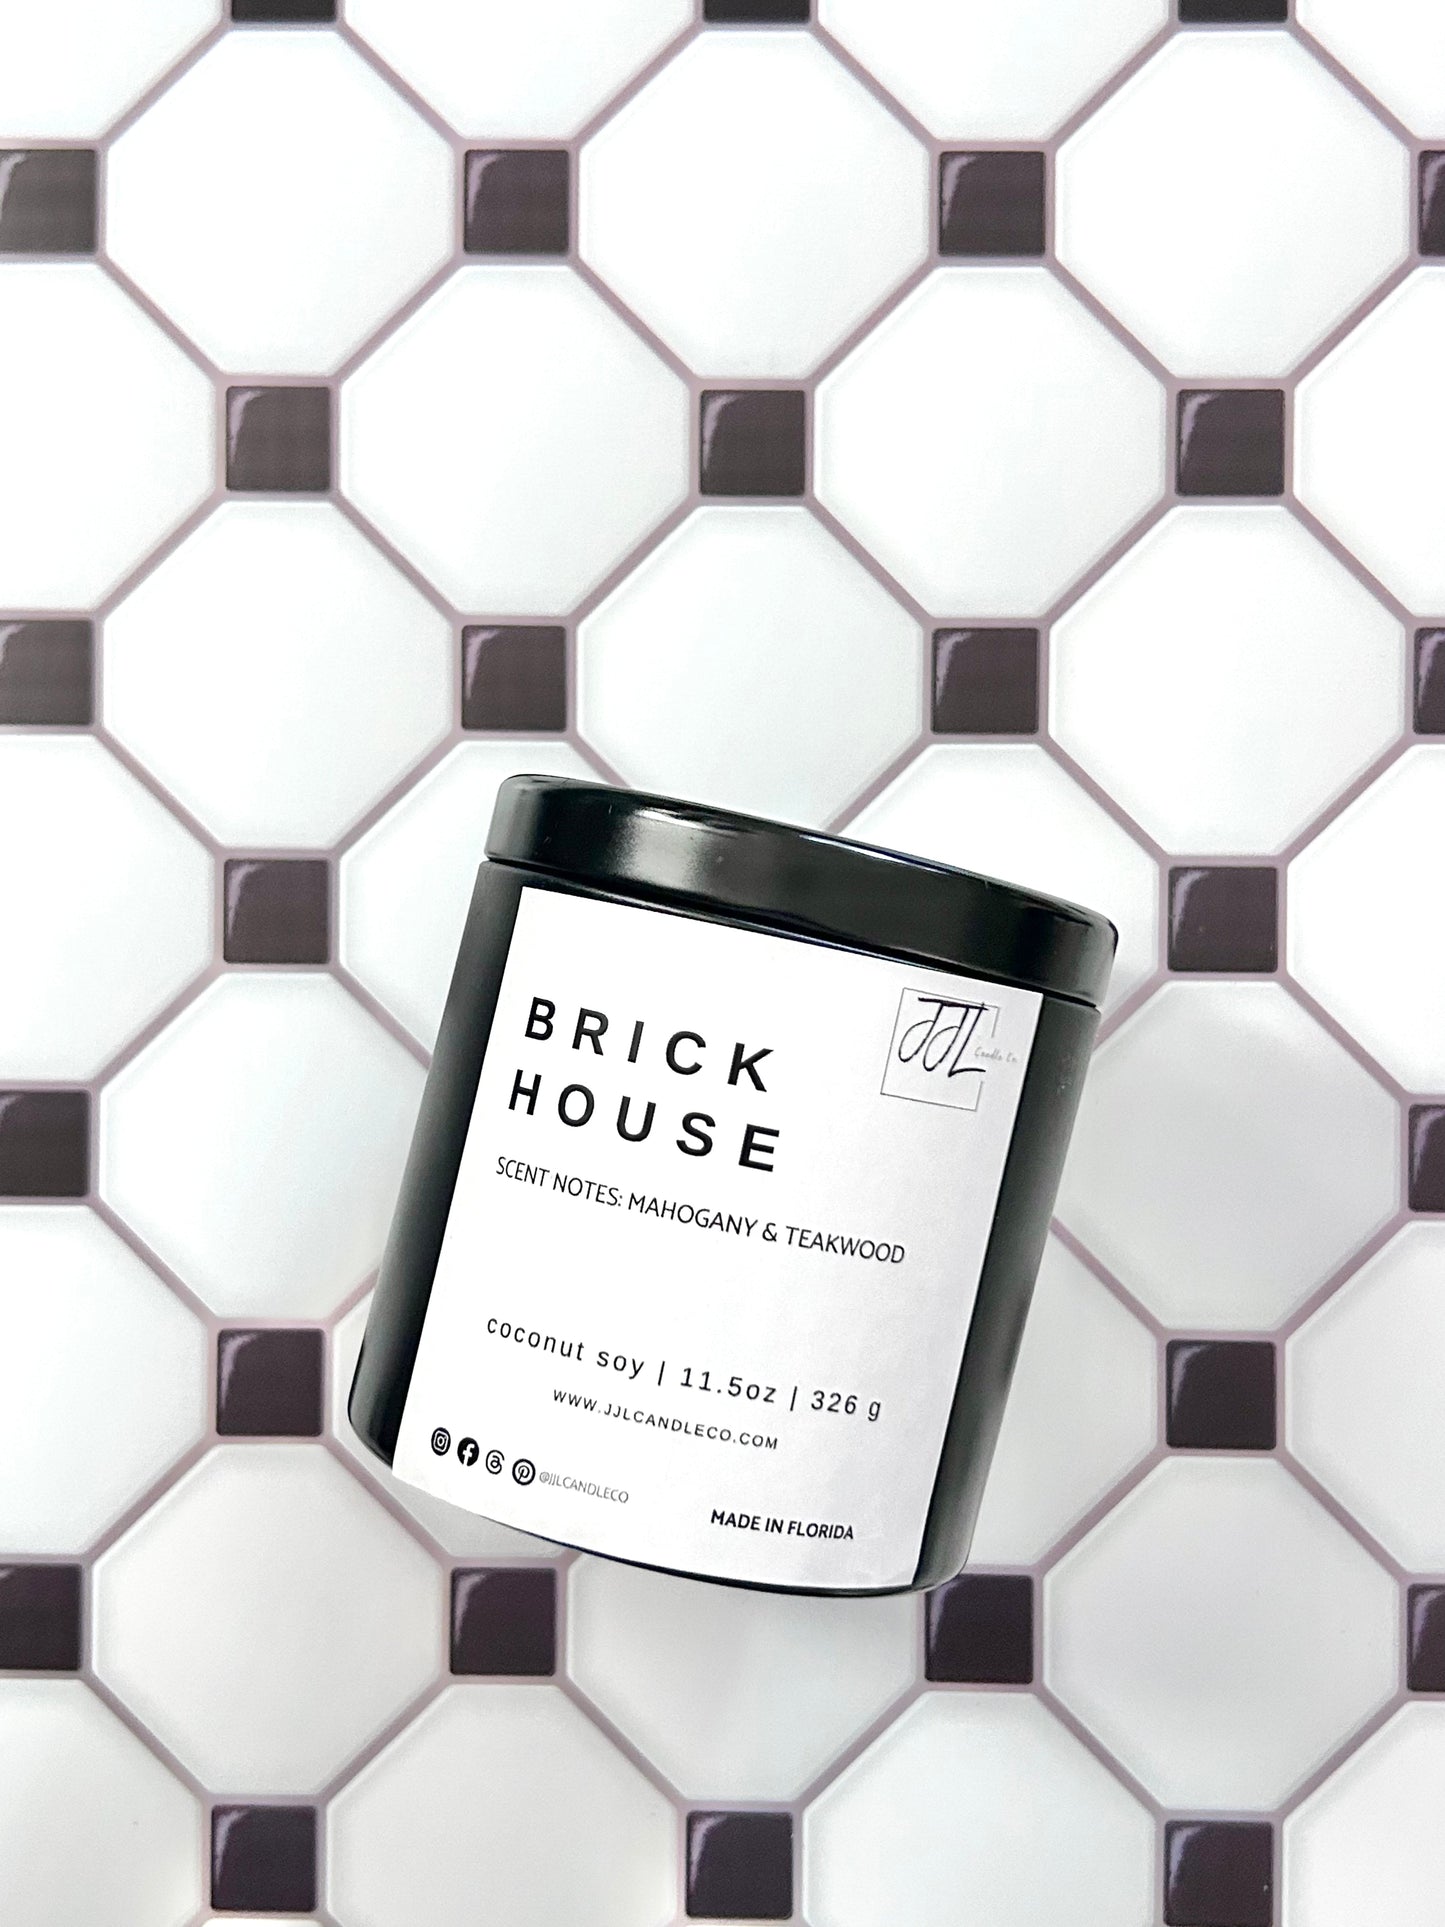 Brickhouse - J.J.L. Candle Co.